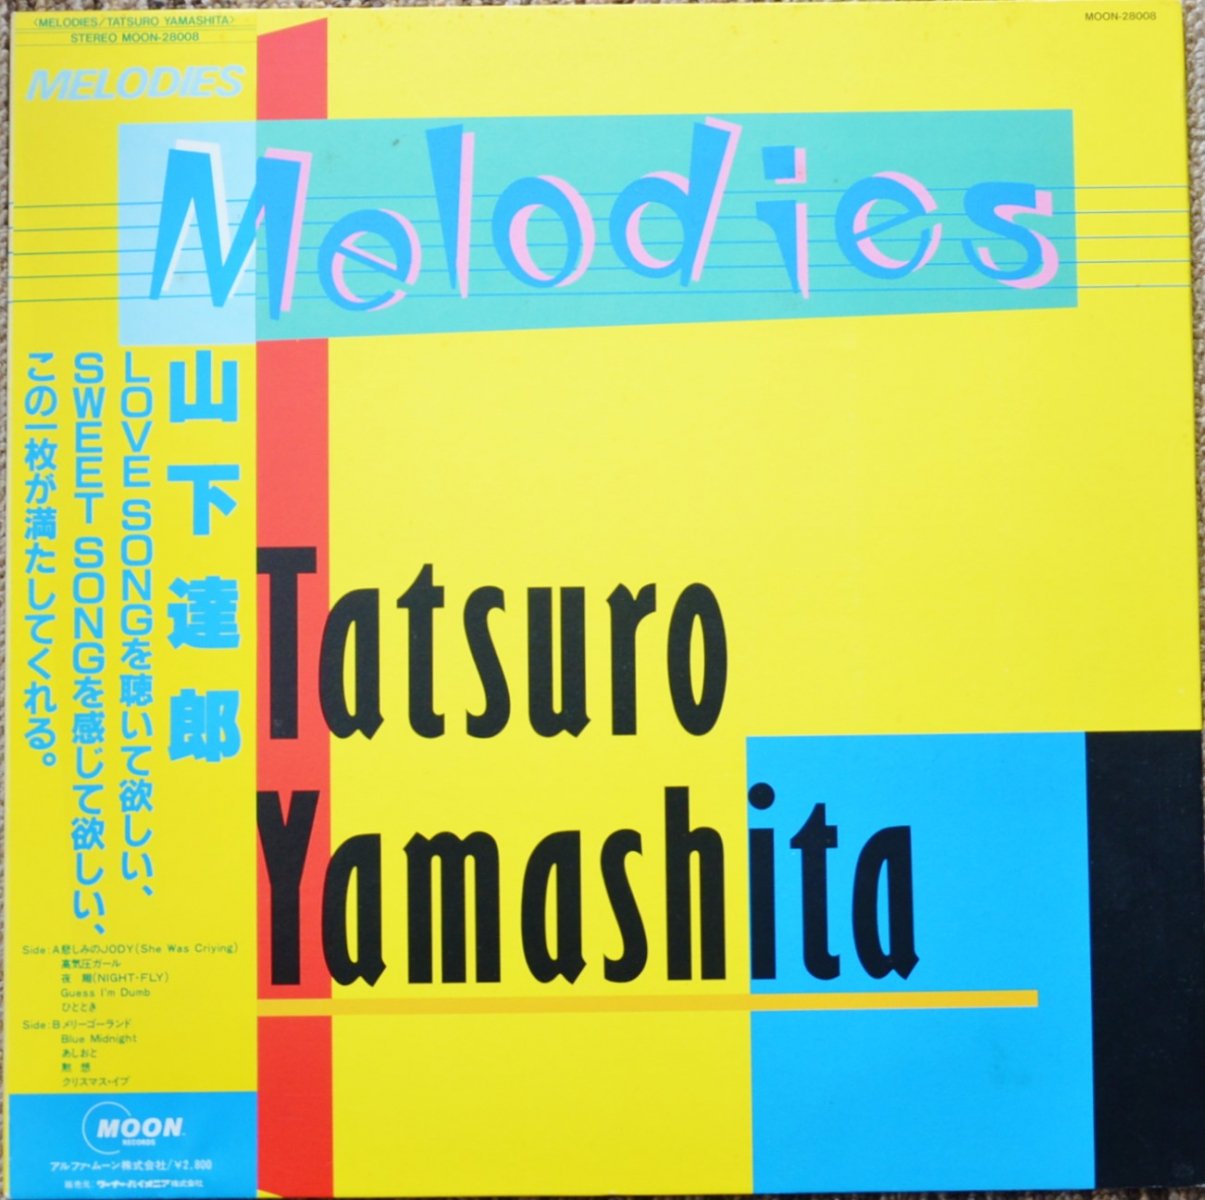 山下達郎 TATSURO YAMASHITA / メロディーズ MELODIES (LP) - HIP TANK ...